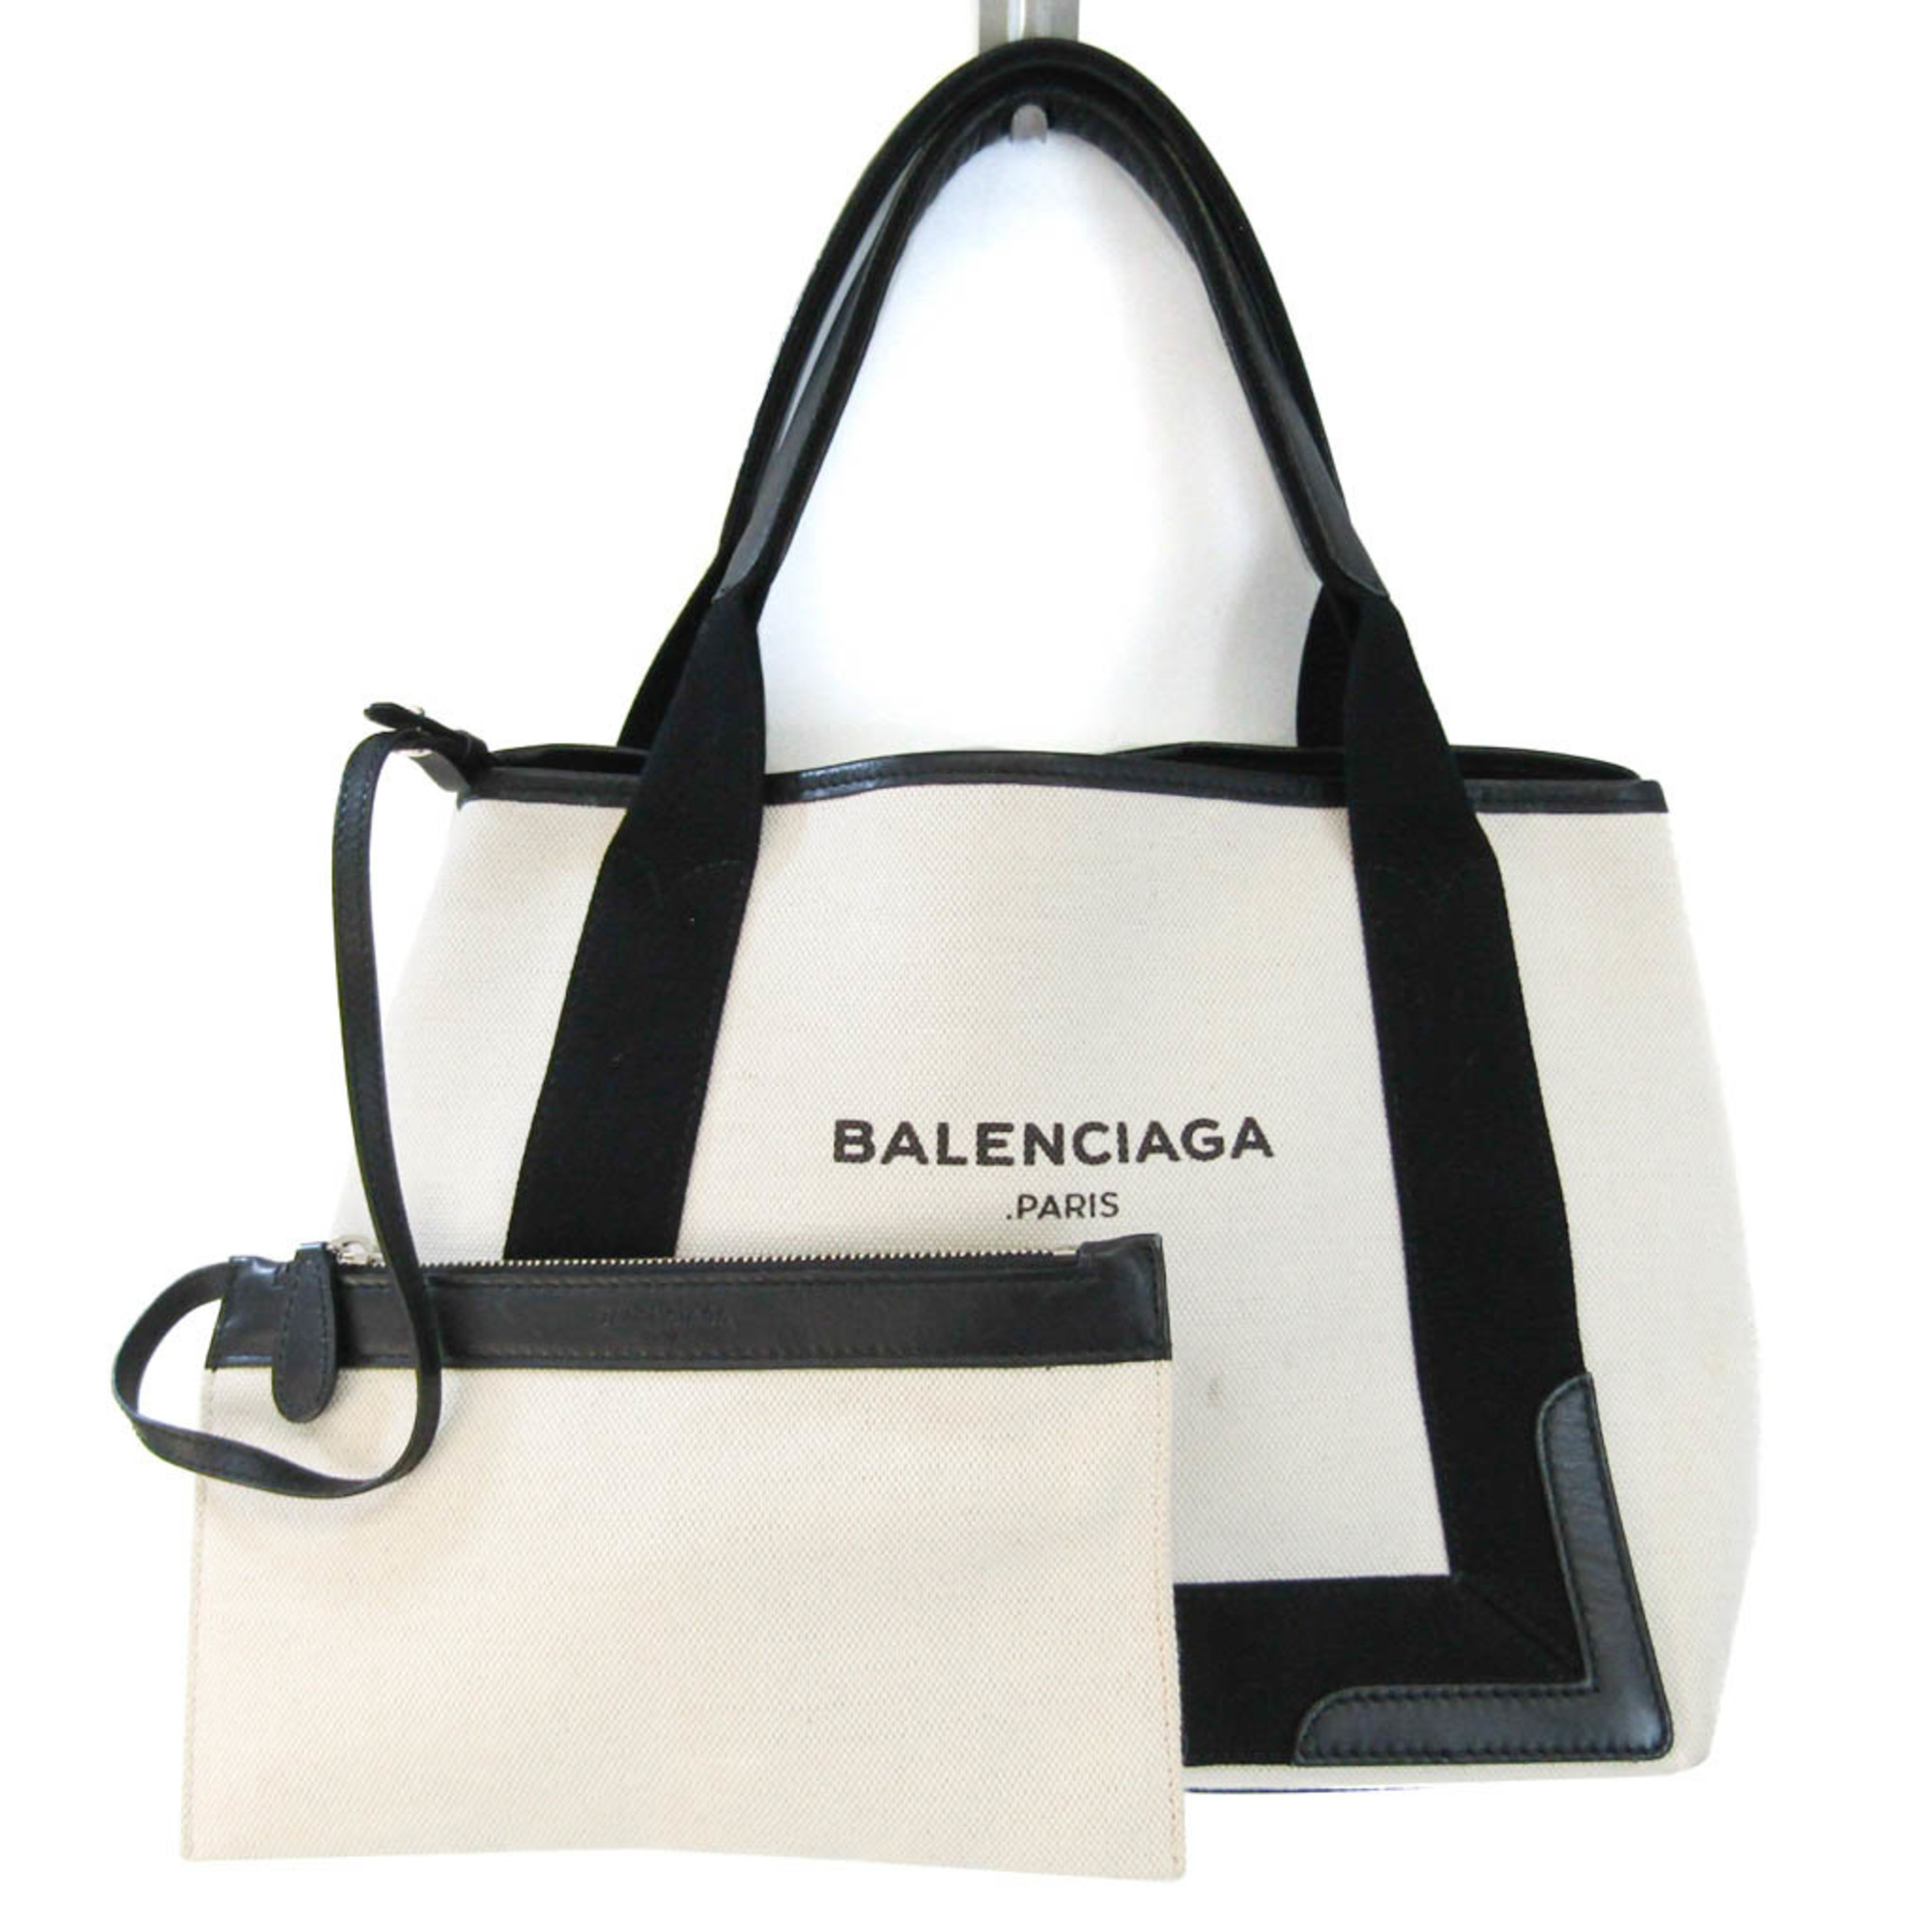 バレンシアガ(Balenciaga) ネイビーカバスS 339933 レディース キャンバス,レザー ハンドバッグ ブラック,オフホワイト |  eLADY Globazone